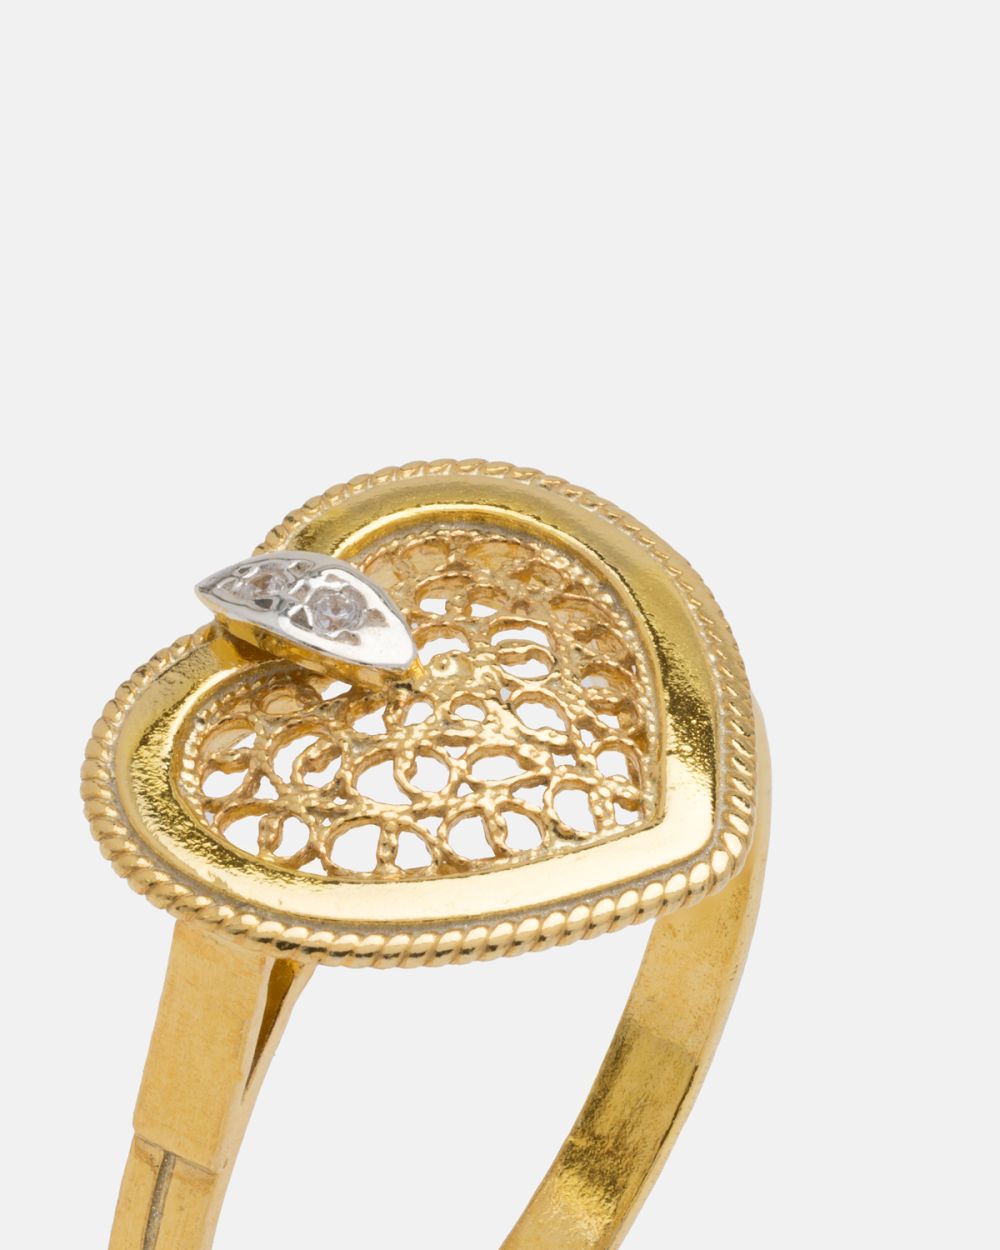 AJ Bicolor Gold Ring 80%